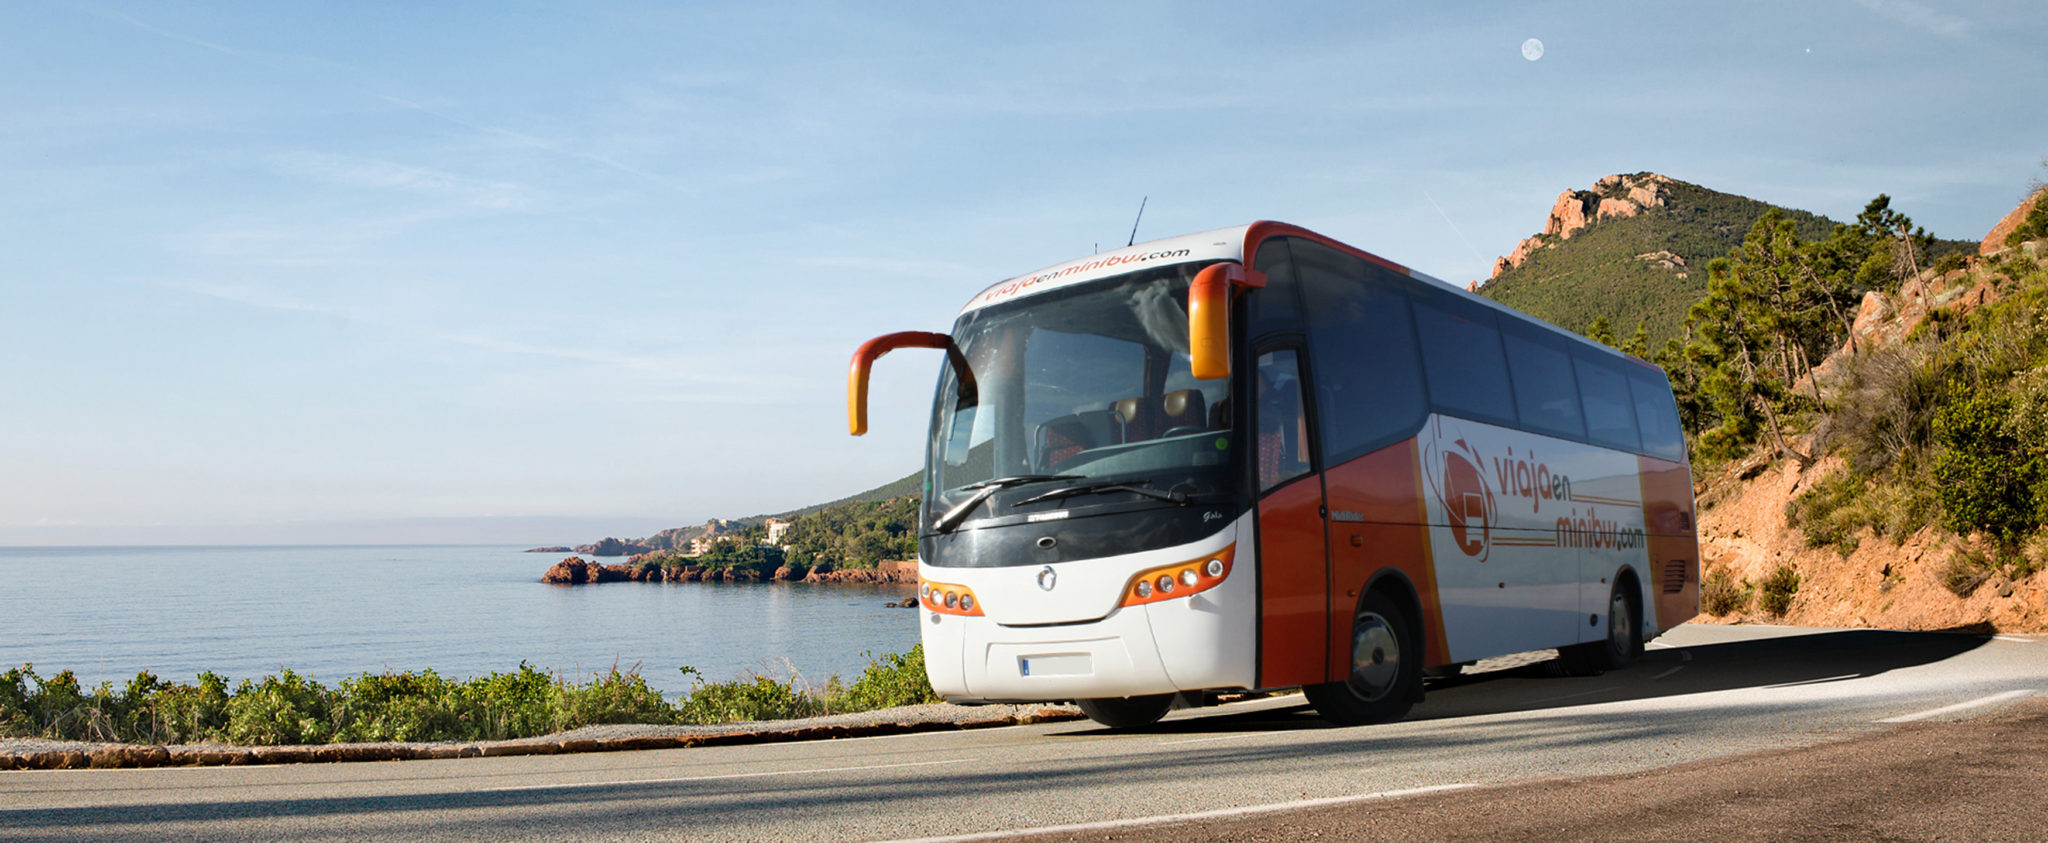 Alquiler Bus Granada